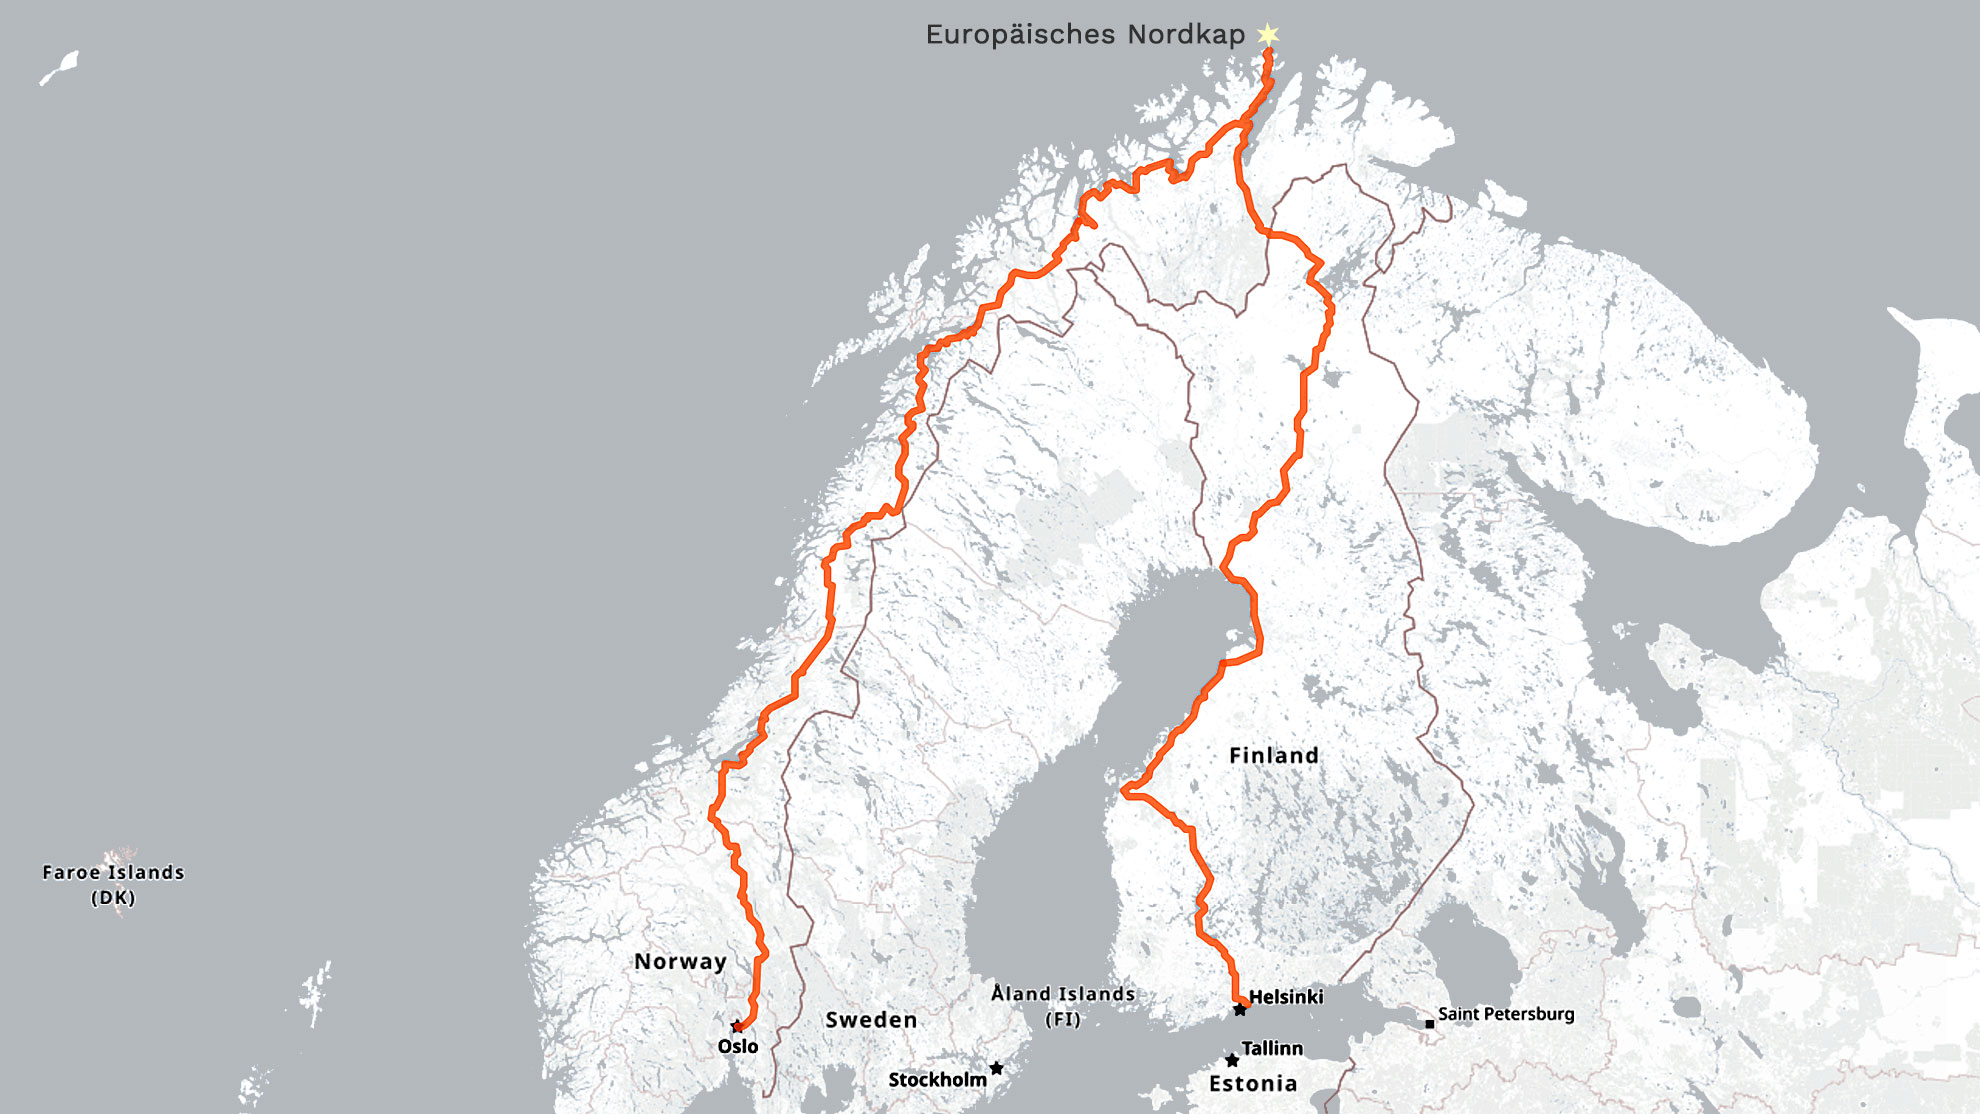 Routenempfehlung-Anreise-zum-Nordkap